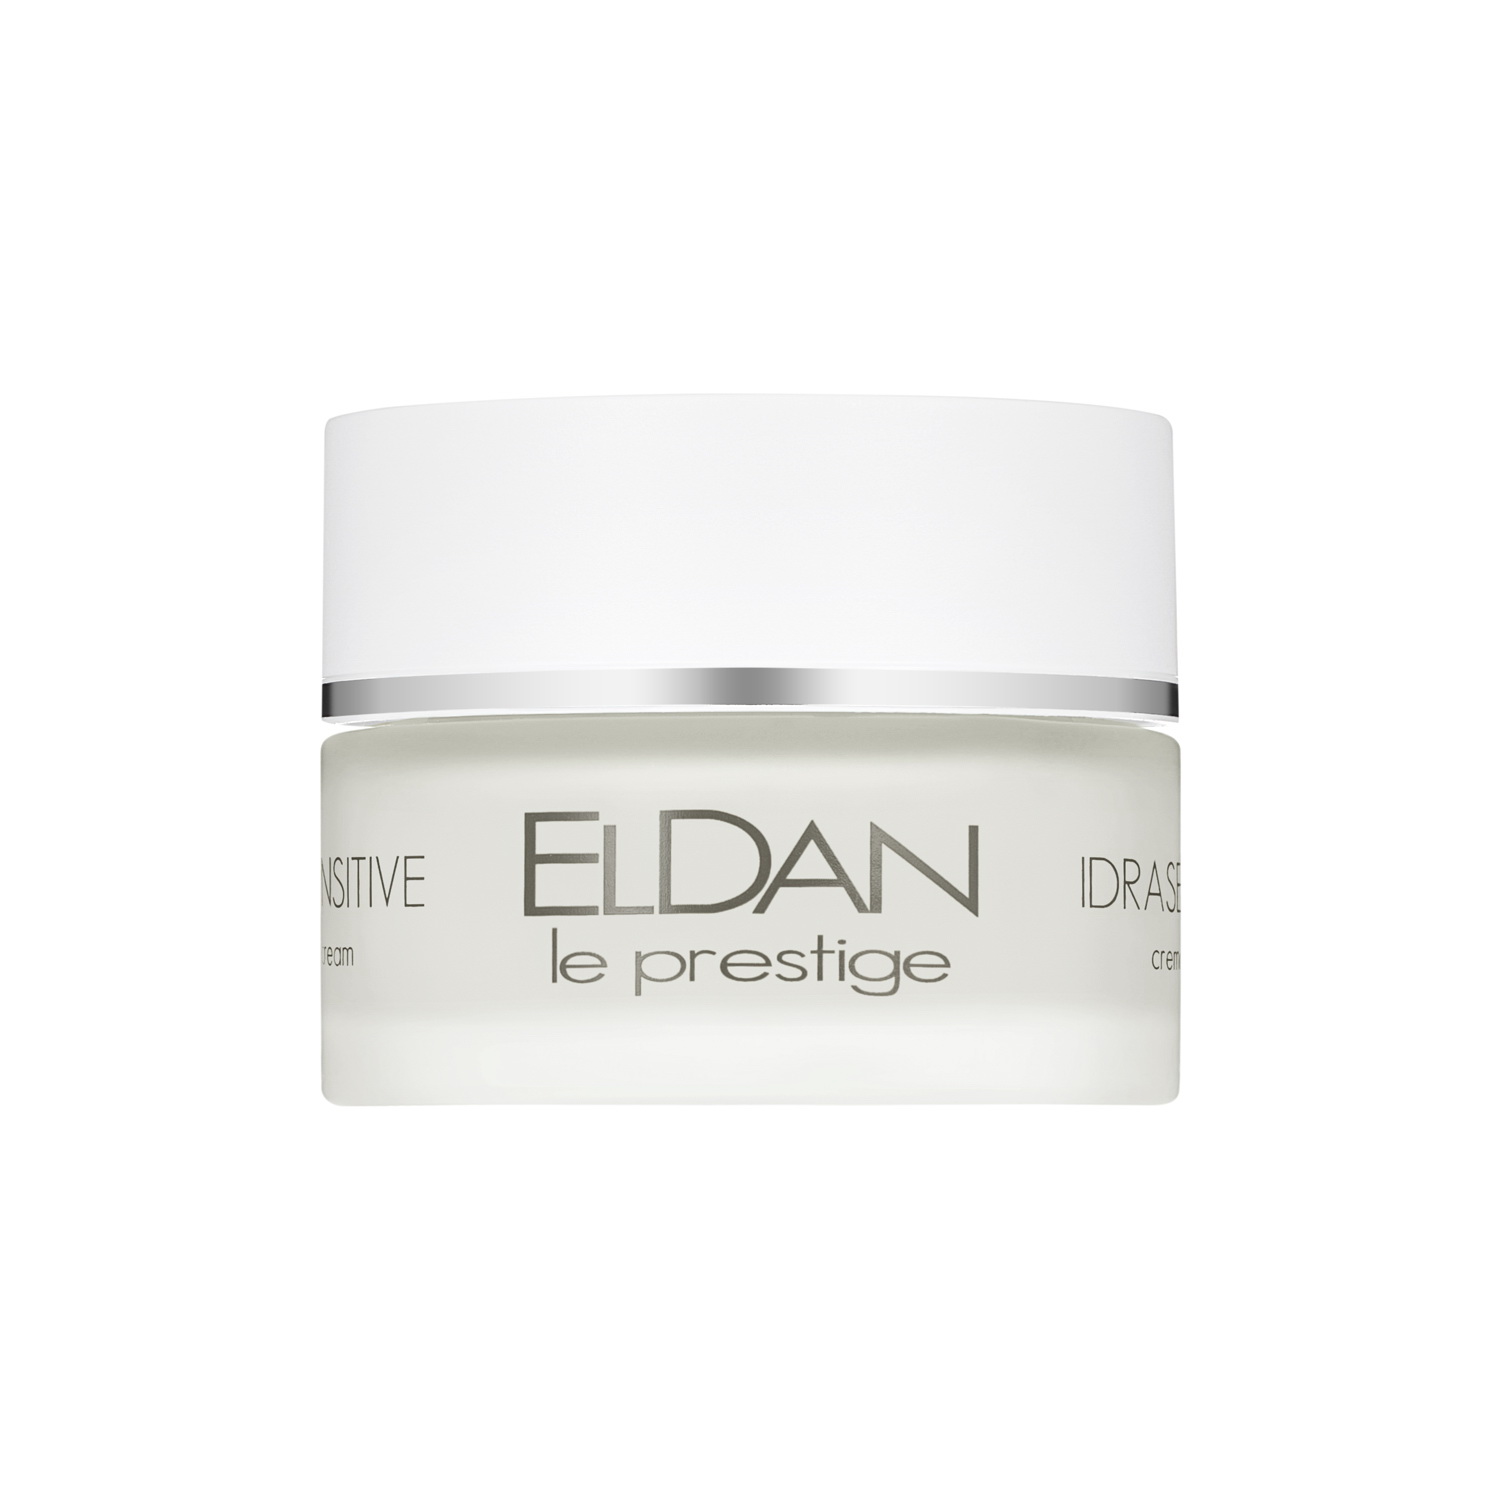 Крем для лица ELDAN Cosmetics Idrasensitive 24H Cream для чувствительной кожи, 50 мл